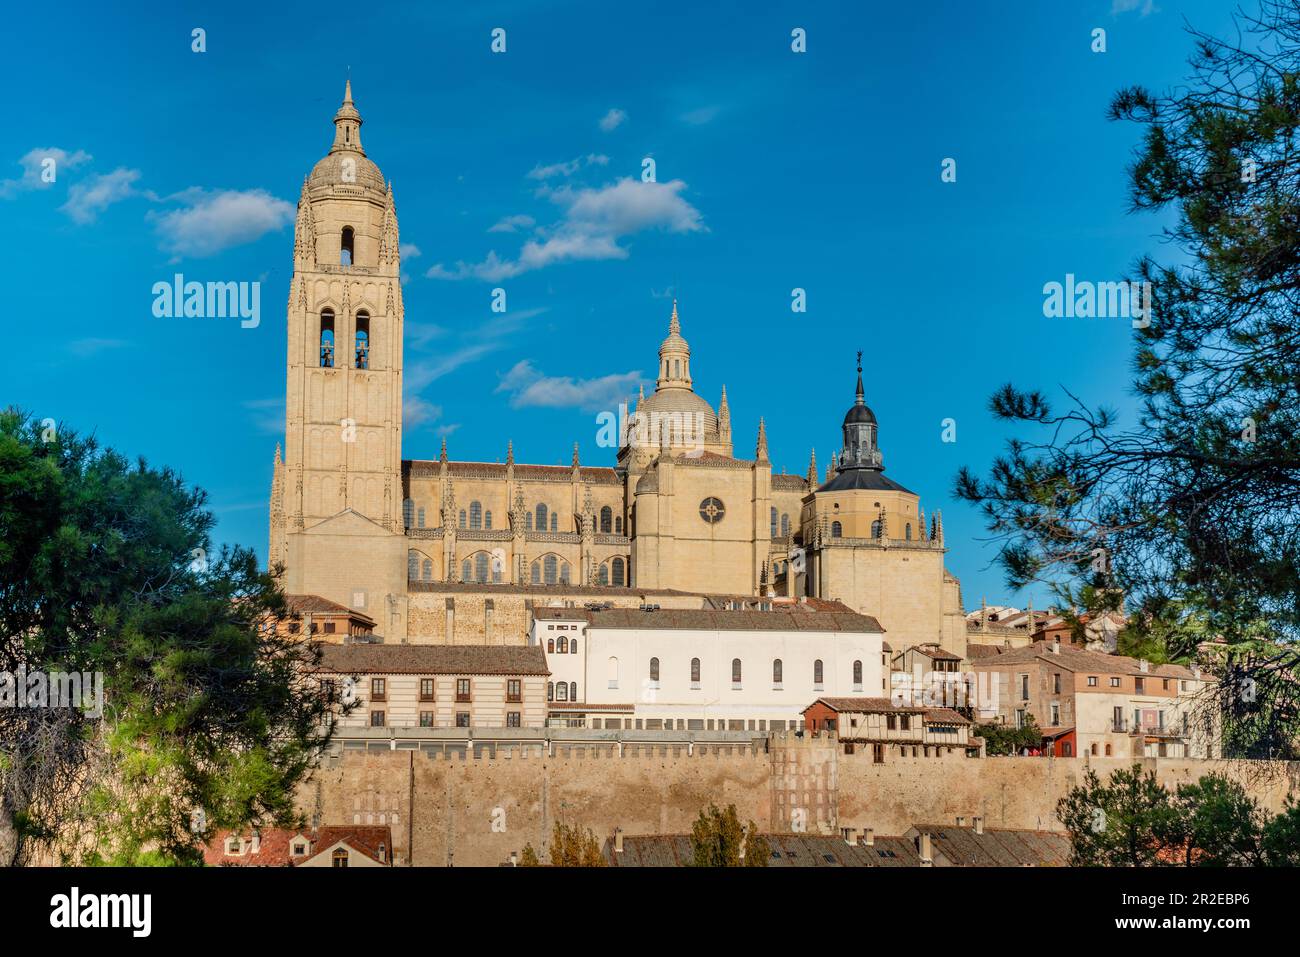 Kathedrale von Segovia - die römisch-katholische Kathedrale im gotischen Stil befindet sich auf dem Platz Plaza Mayor der Stadt Segovia Stockfoto